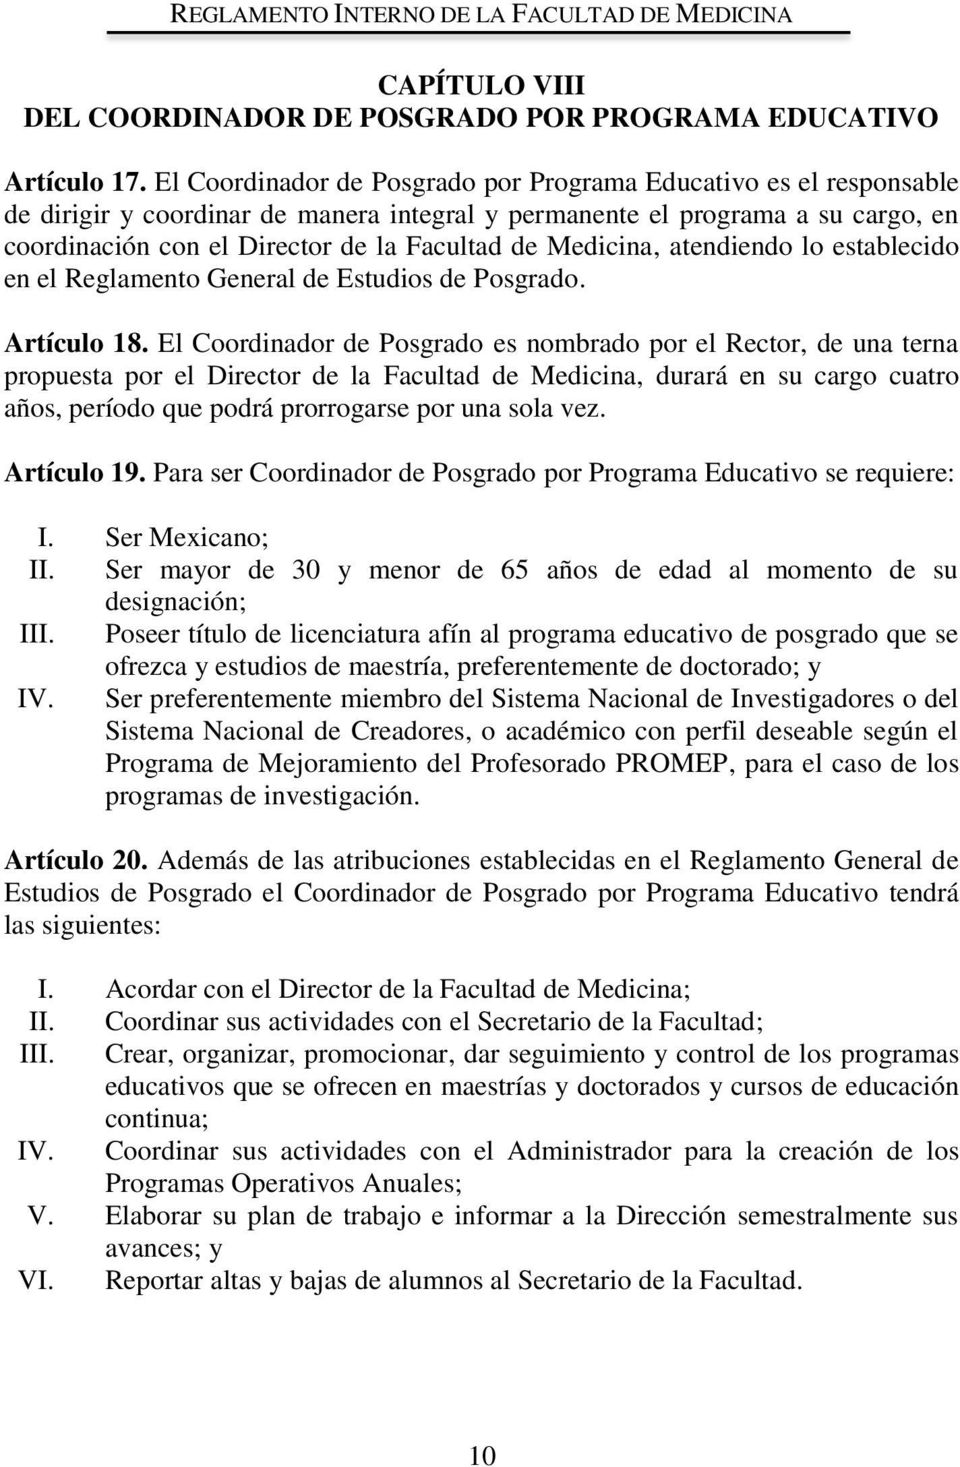 Medicina, atendiendo lo establecido en el Reglamento General de Estudios de Posgrado. Artículo 18.